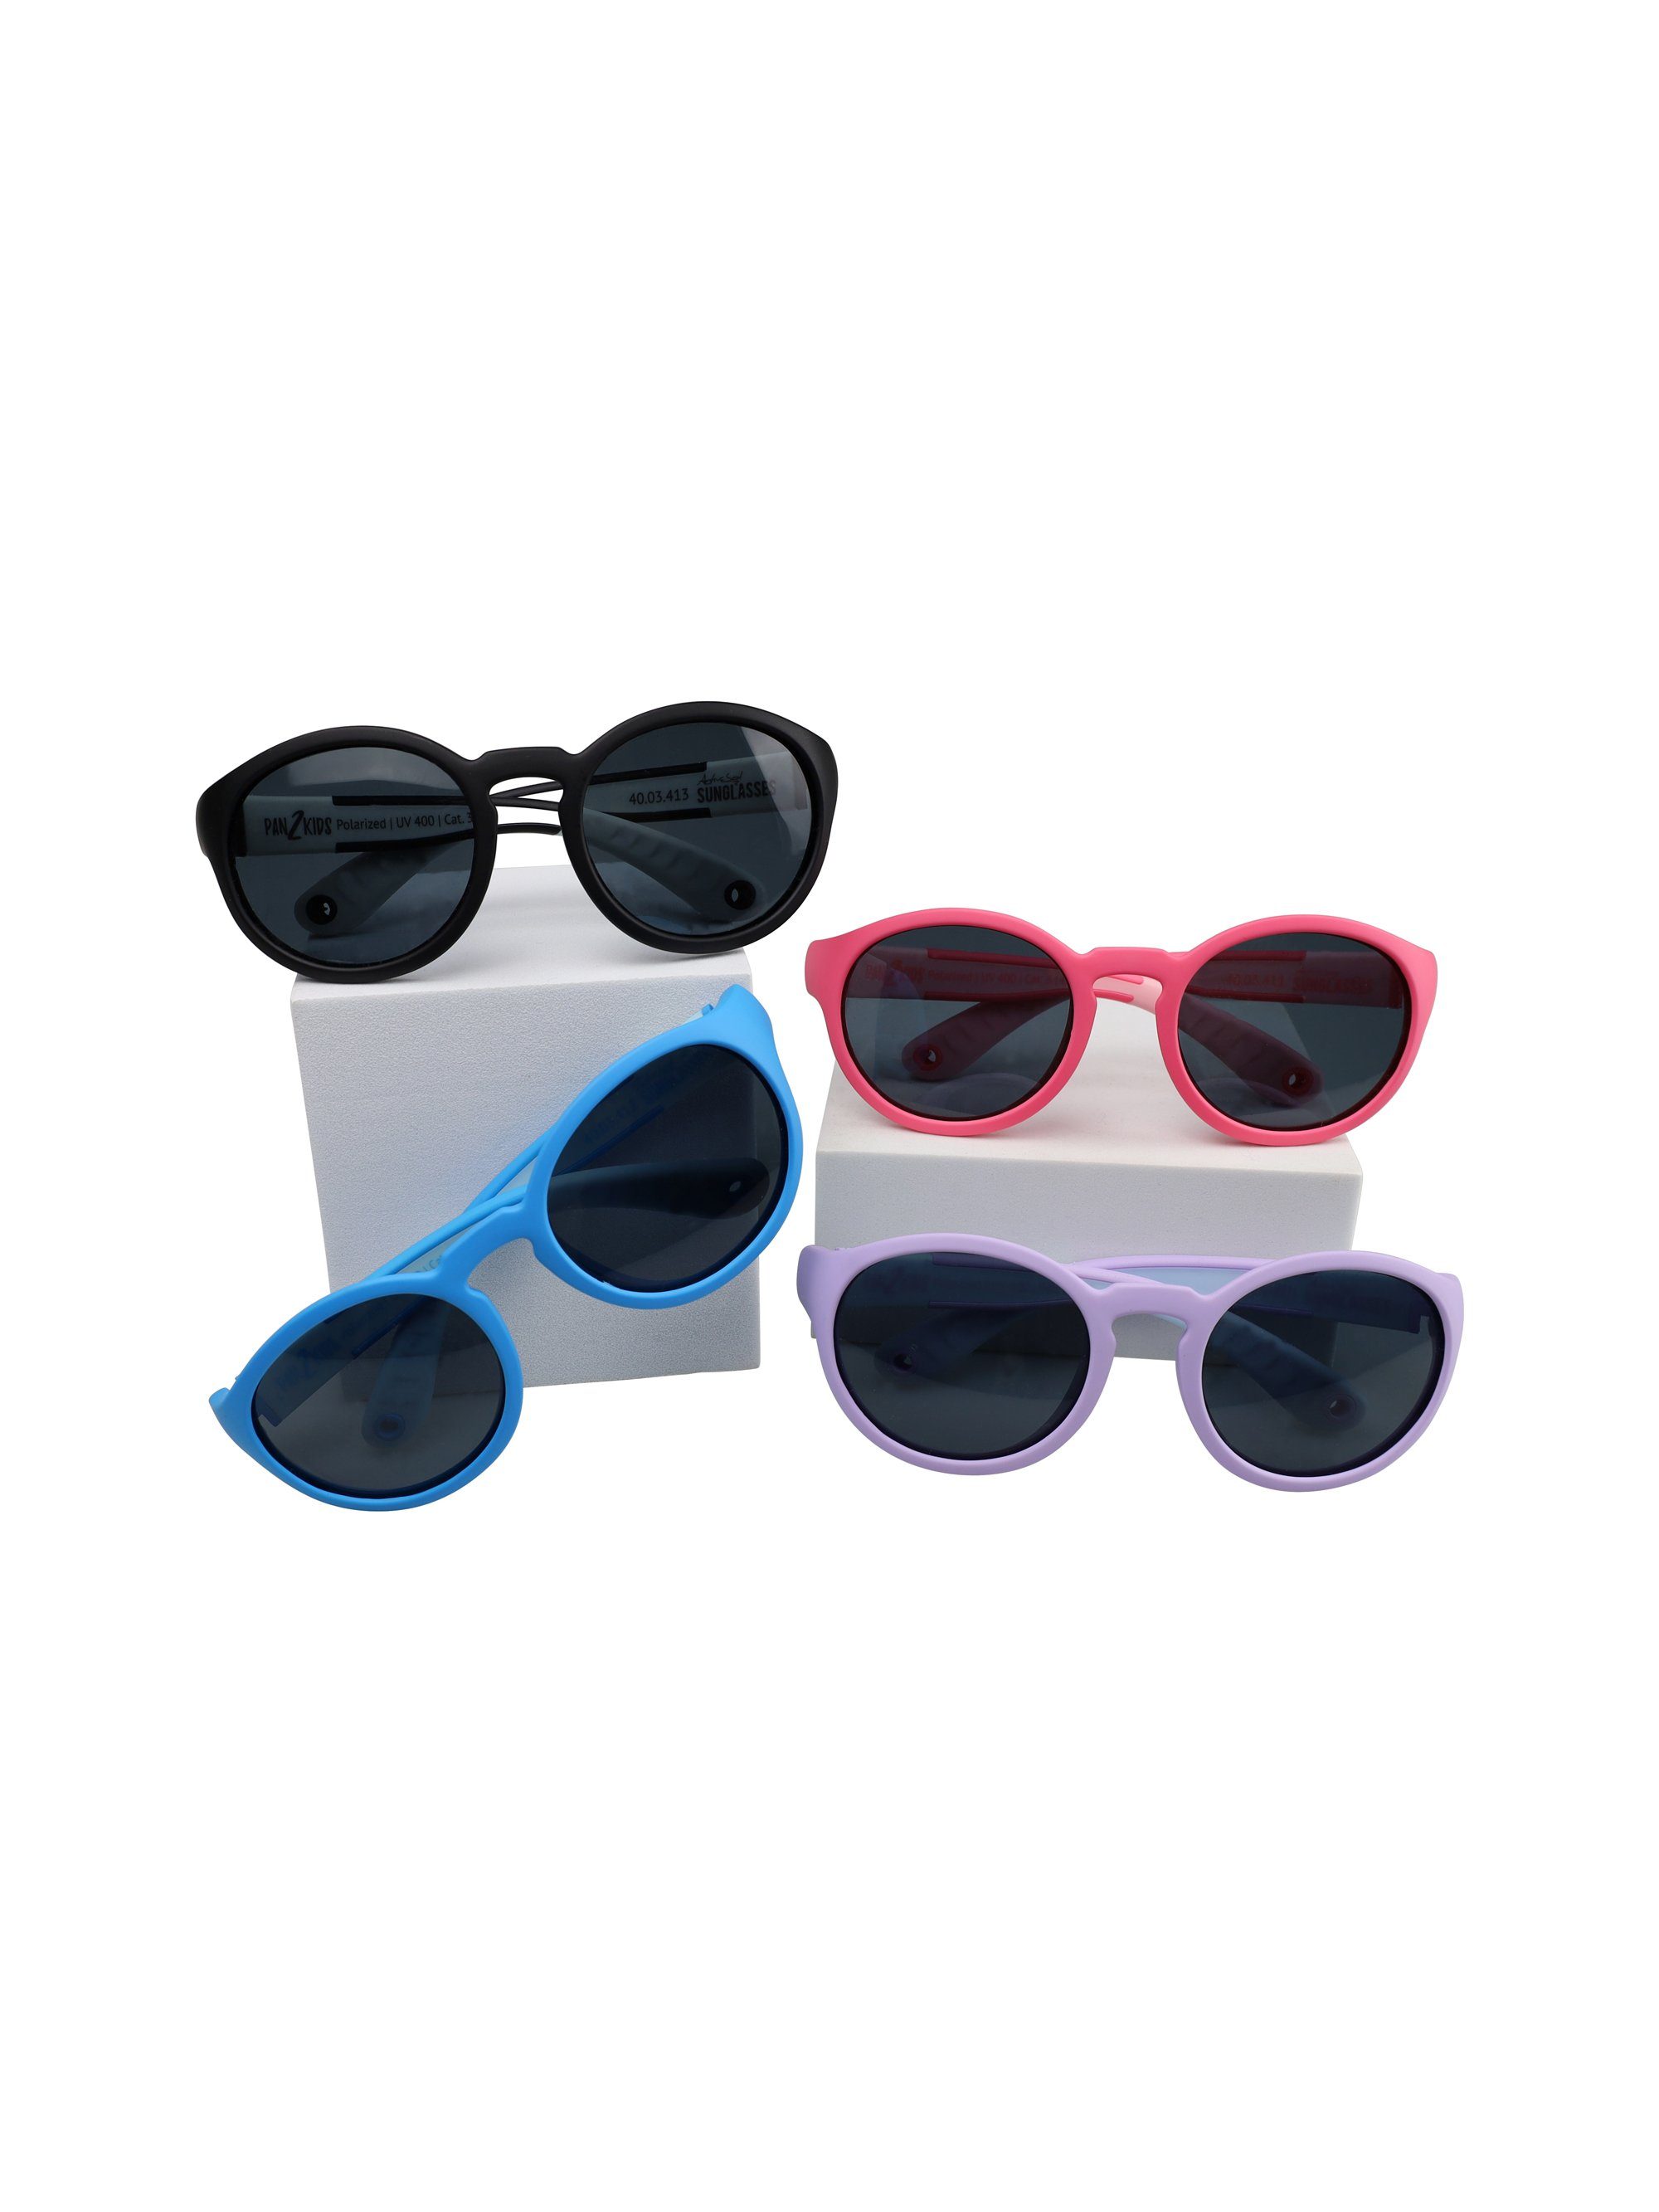 Panto polarisiert Tranquil SUNGLASSES Blue Design, - ActiveSol Kinder Sonnenbrille Jahre, Pan2Kids, – 2 für 5